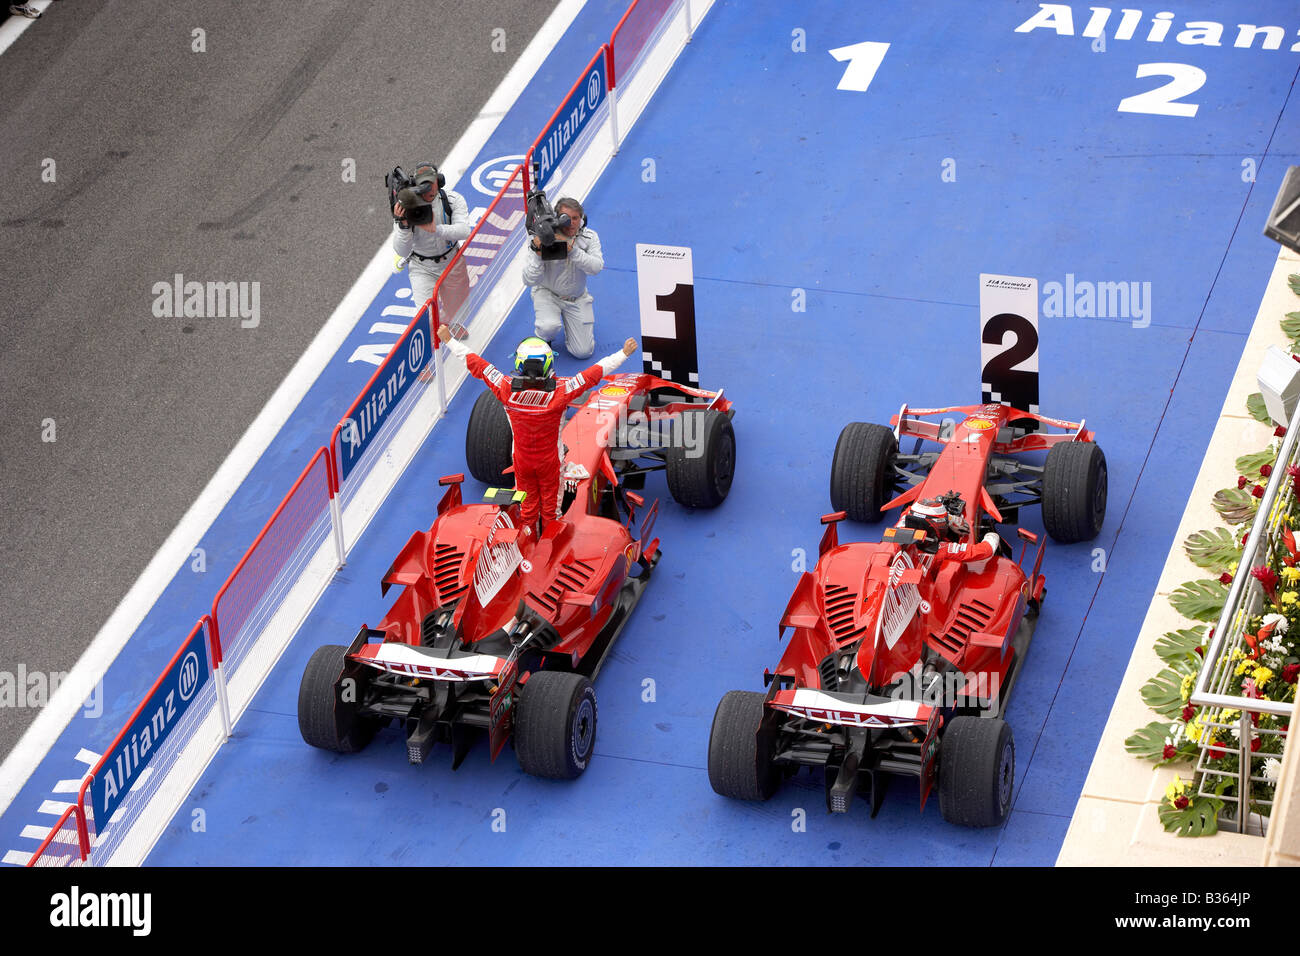 Felipe Massa per la Ferrari celebra la vittoria nella sua auto dopo il 2008 Bahrain Grand Prix di Formula 1 con Kimi Raikkonen. Foto Stock